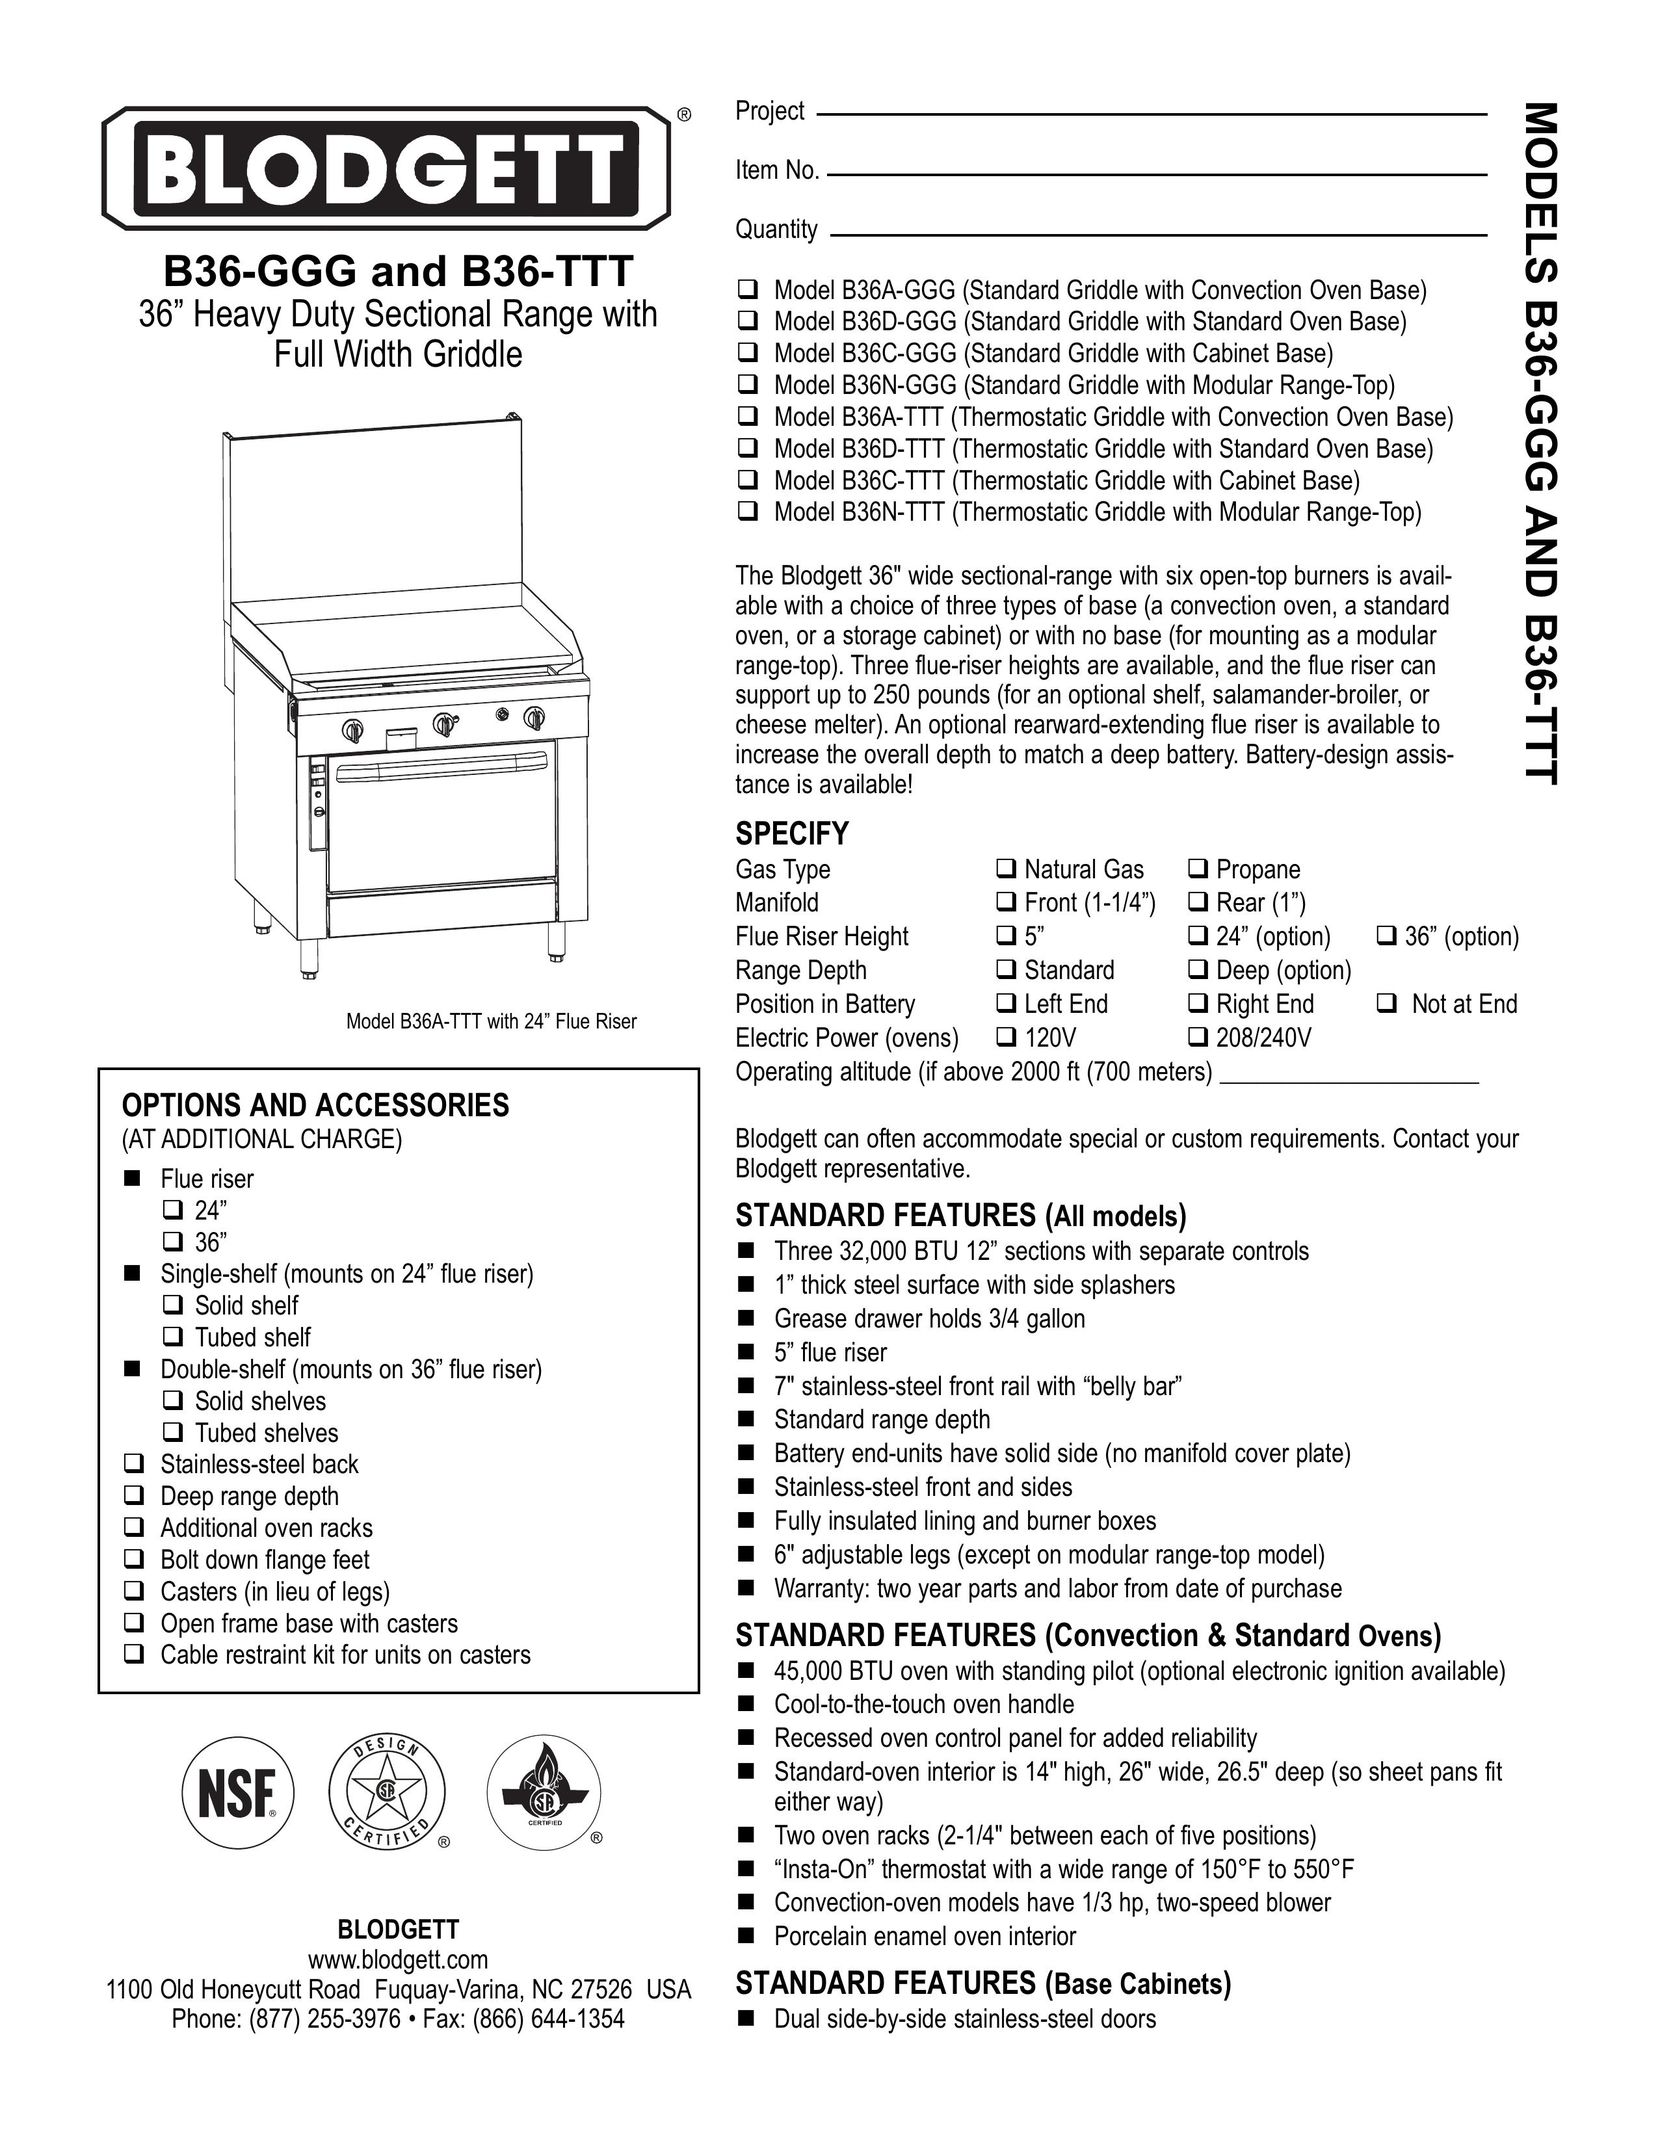 Blodgett B36-GGG Range User Manual